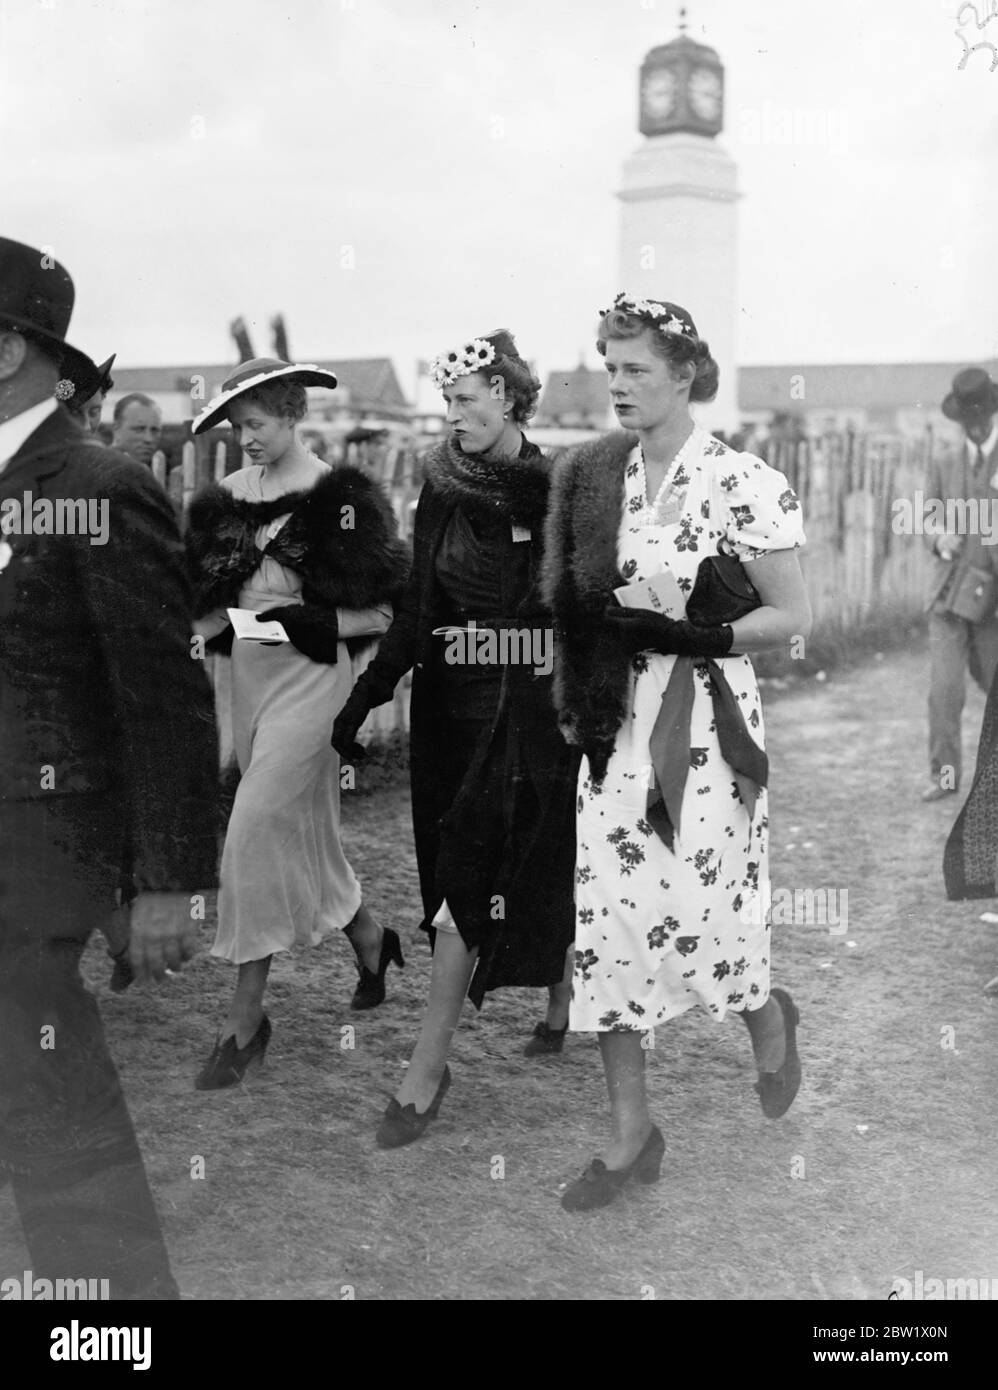 Petits chapeaux à Epsom le jour des dames. Deux petits chapeaux et un avec une plus grande visière chaude par les femmes racegoers intelligentes à Epsom le jour Oaks. 4 juin 1937 Banque D'Images